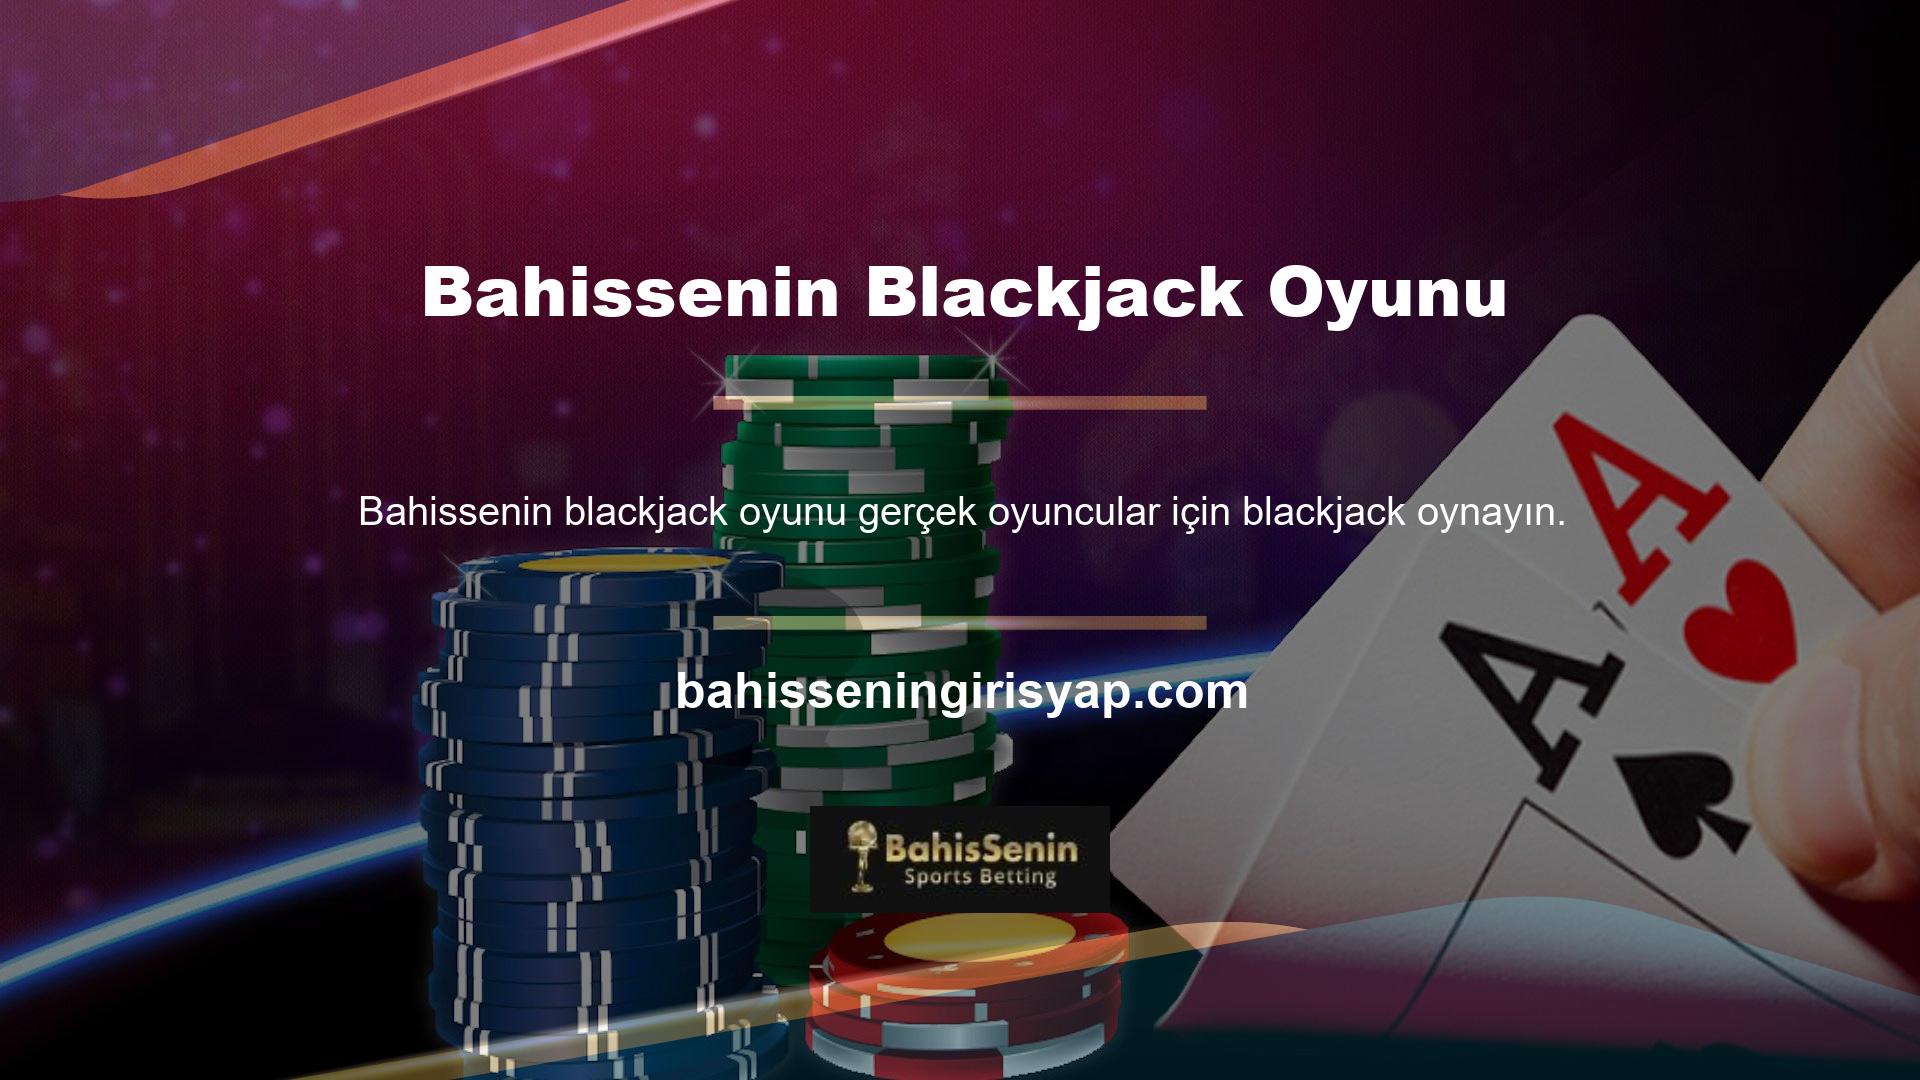 Blackjack, tüm dünyada blackjack olarak bilinir